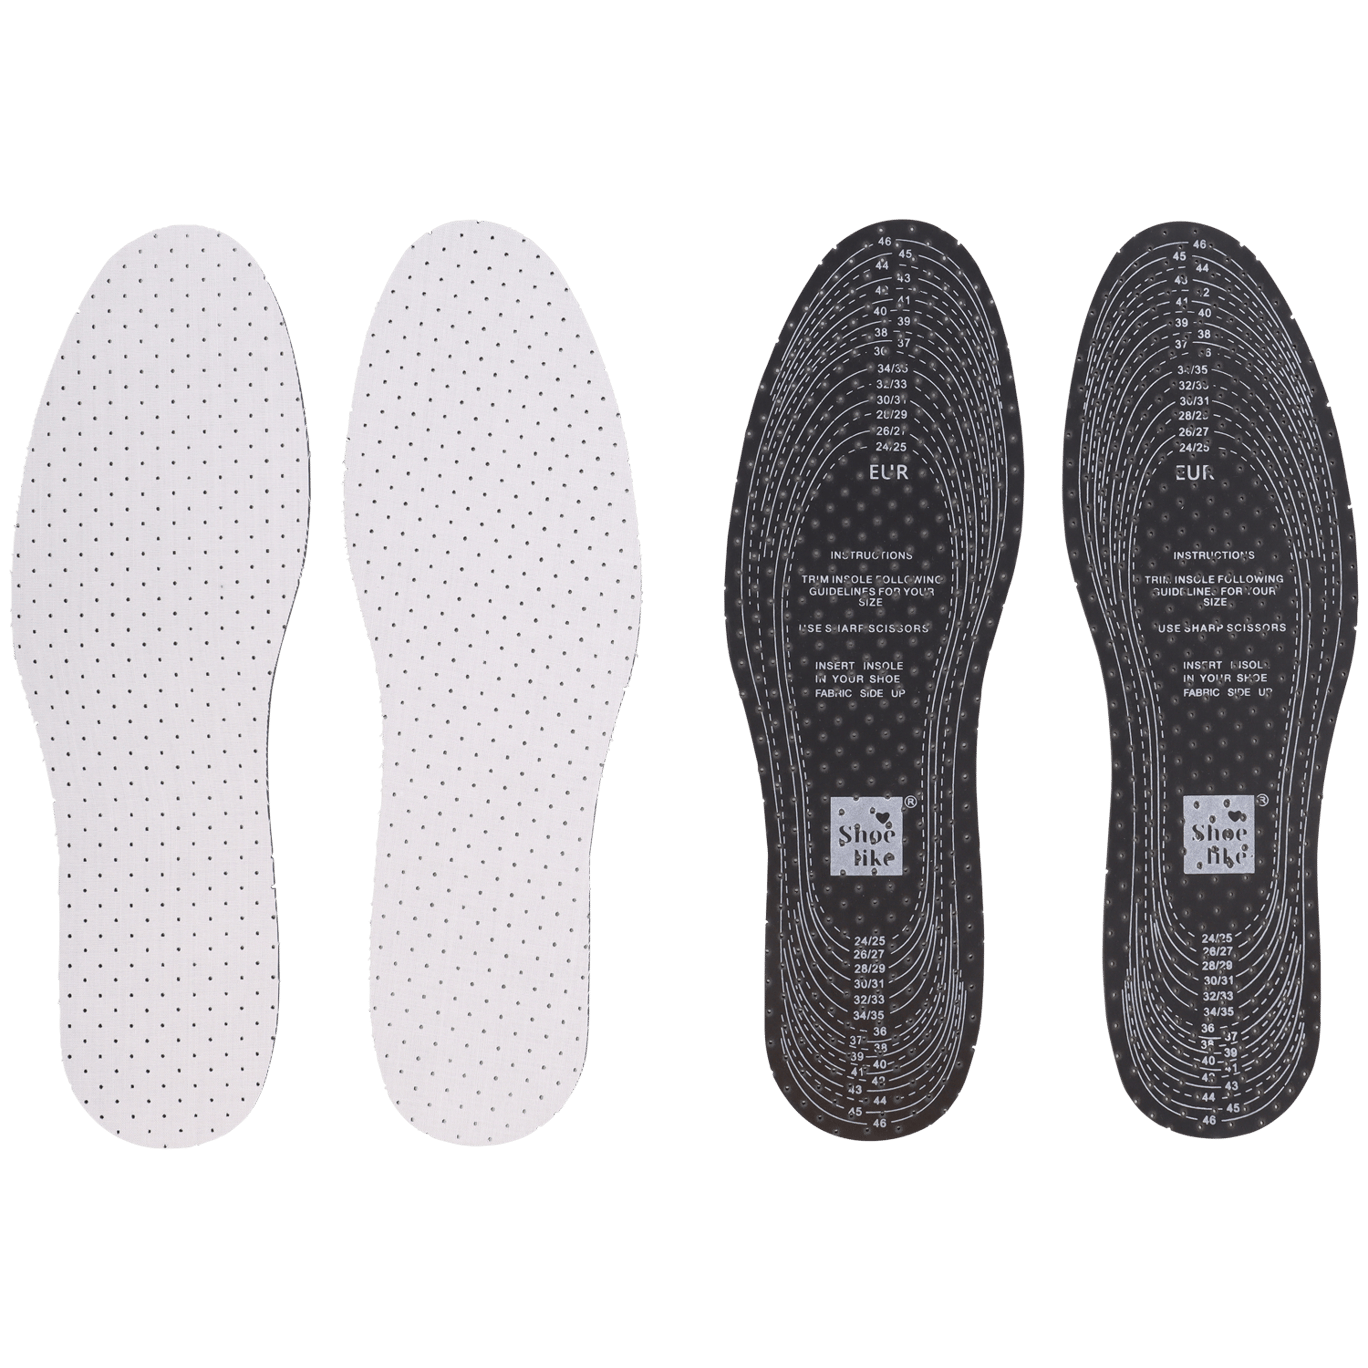 Schoenen Inlegzolen & Accessoires Schoenverzorging & Schoonmaken Limited Edition set van 3 paar schoenkussens 